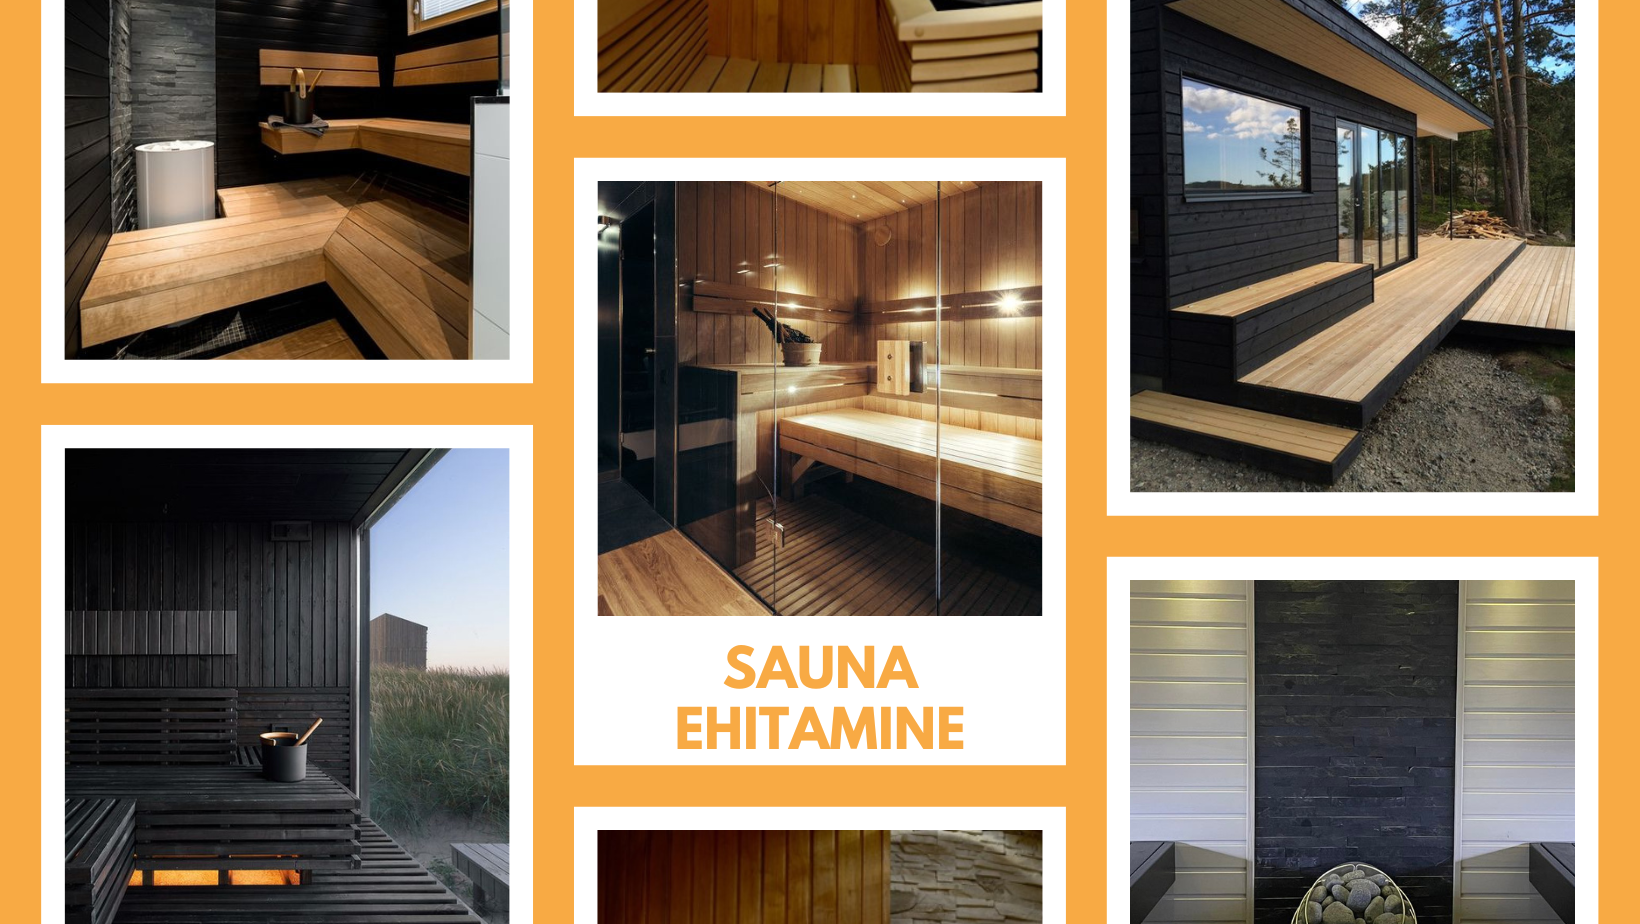 Sauna ehitamine algab planeerimisest Sauna ehitamine koosneb mitmest etapist, mis kõik on omavahel seotud ja peavad moodustama ühtse terviku. Siin on mitmeid nü